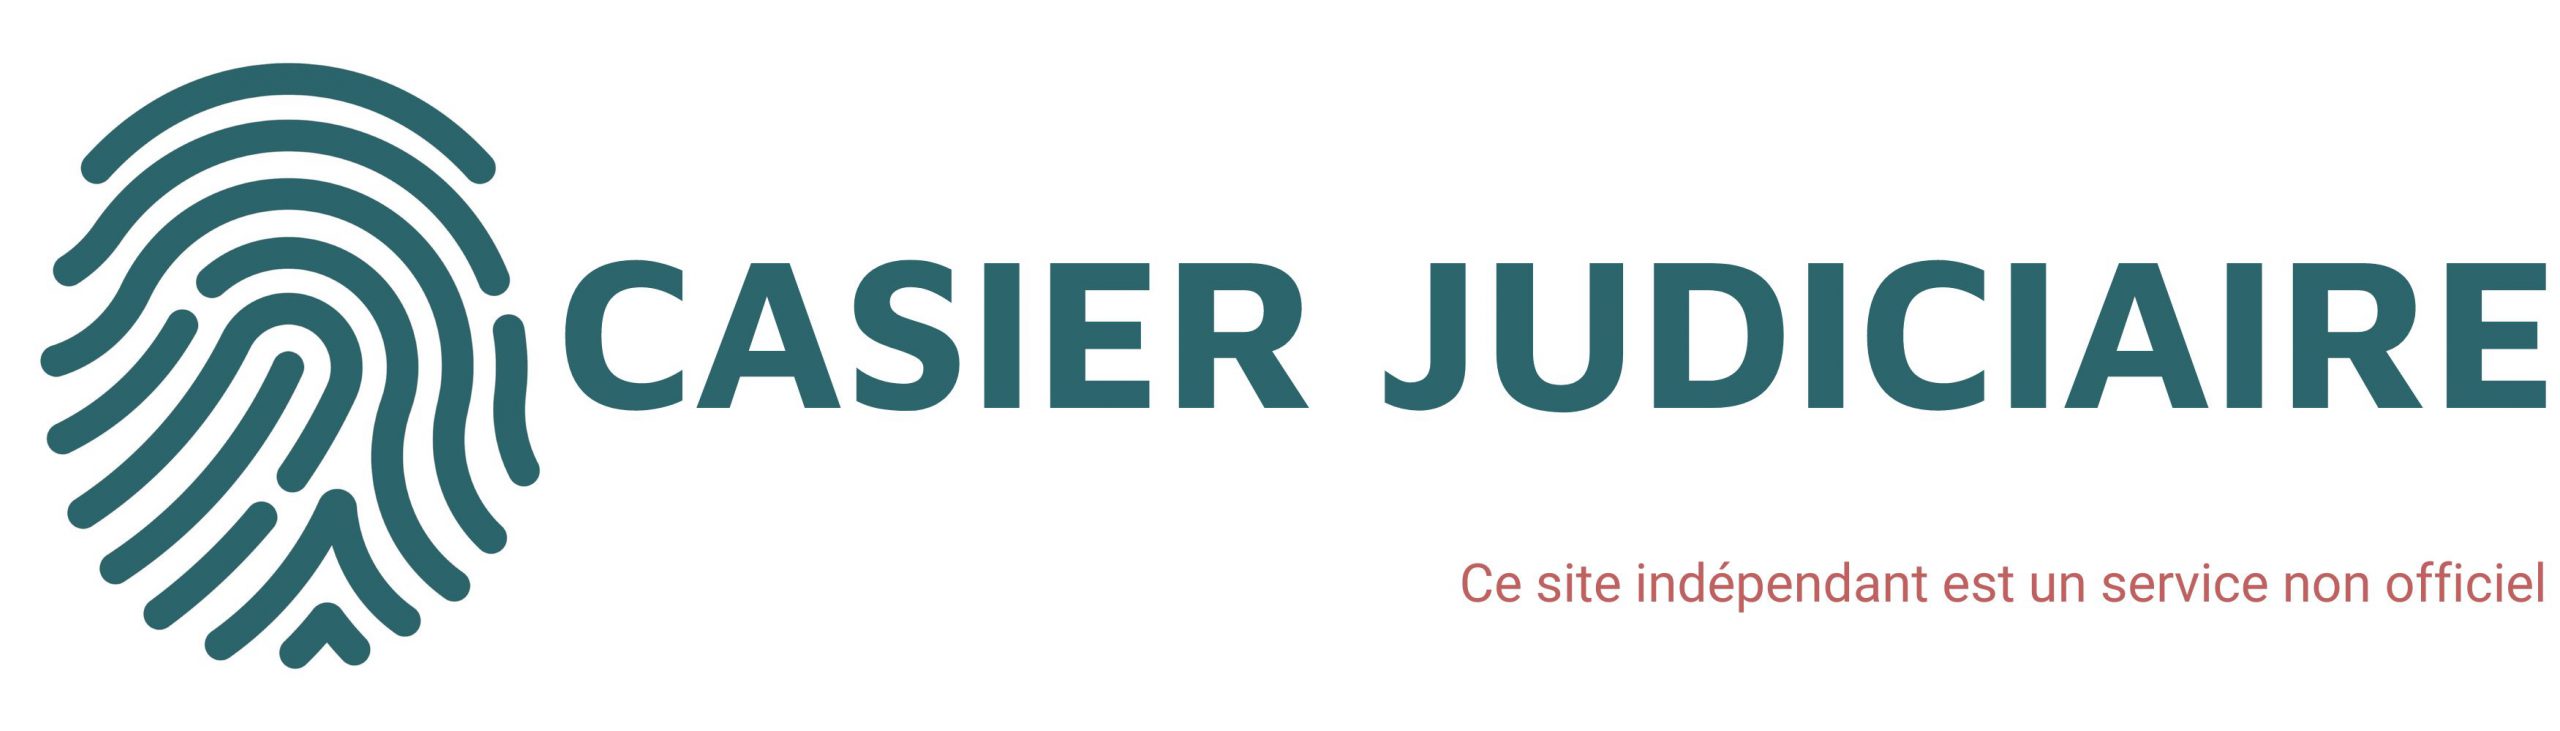 casier-judiciaire logo